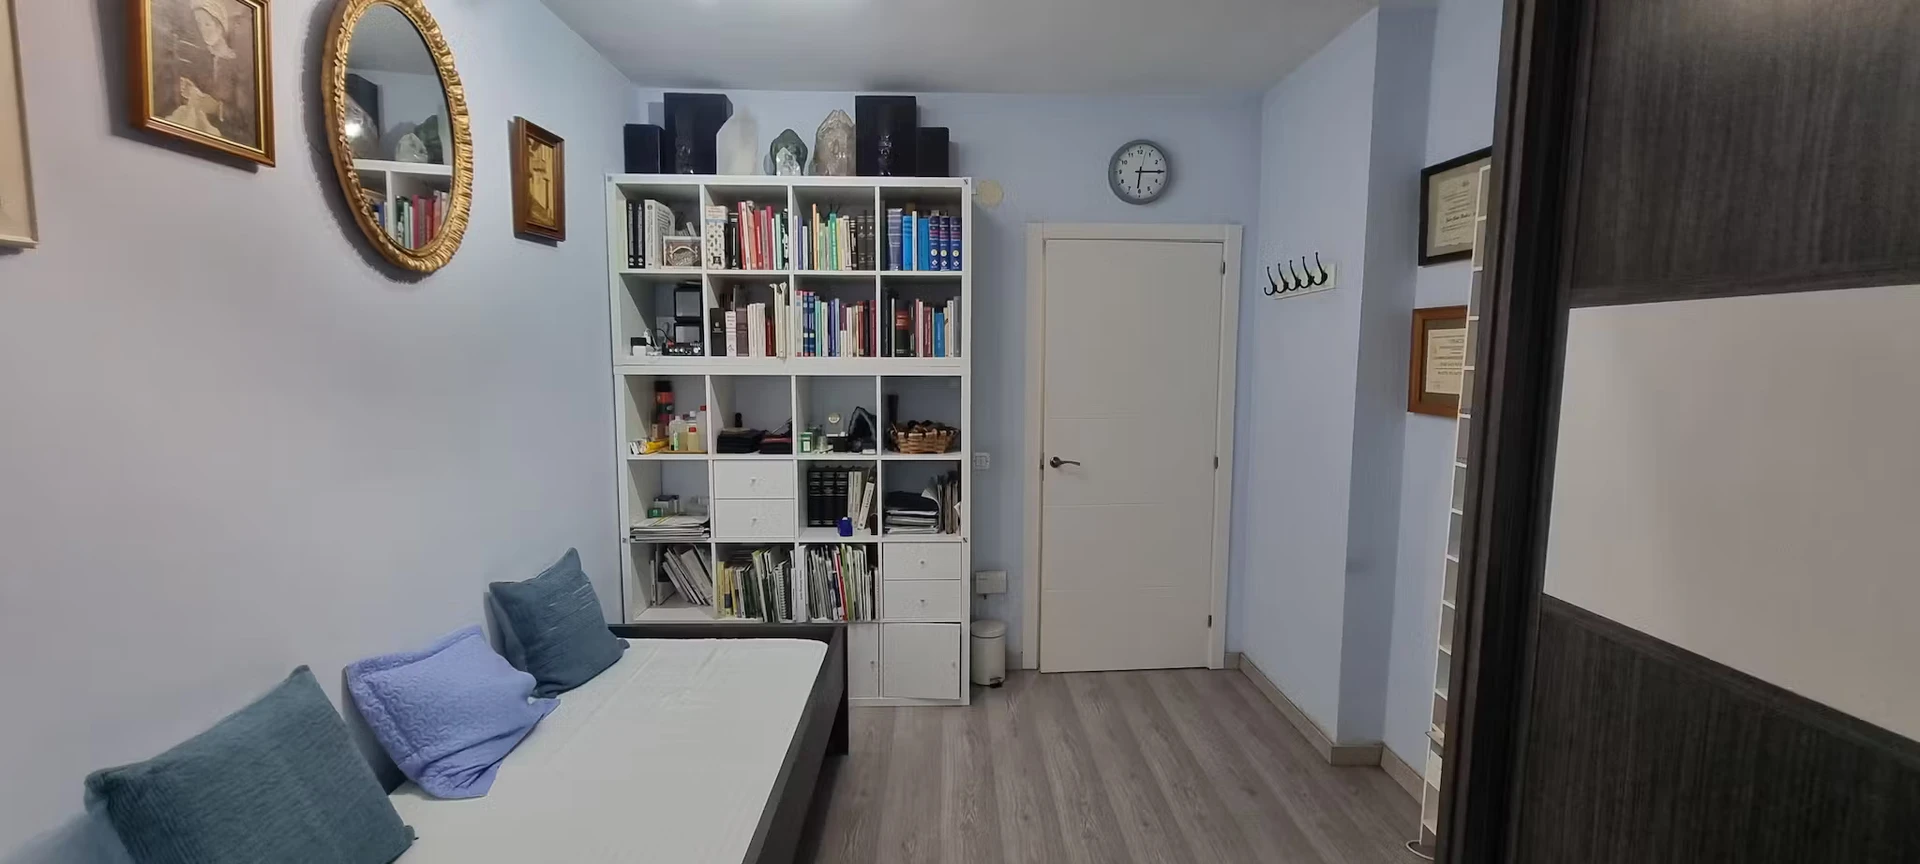 Alquiler de habitaciones por meses en Sevilla